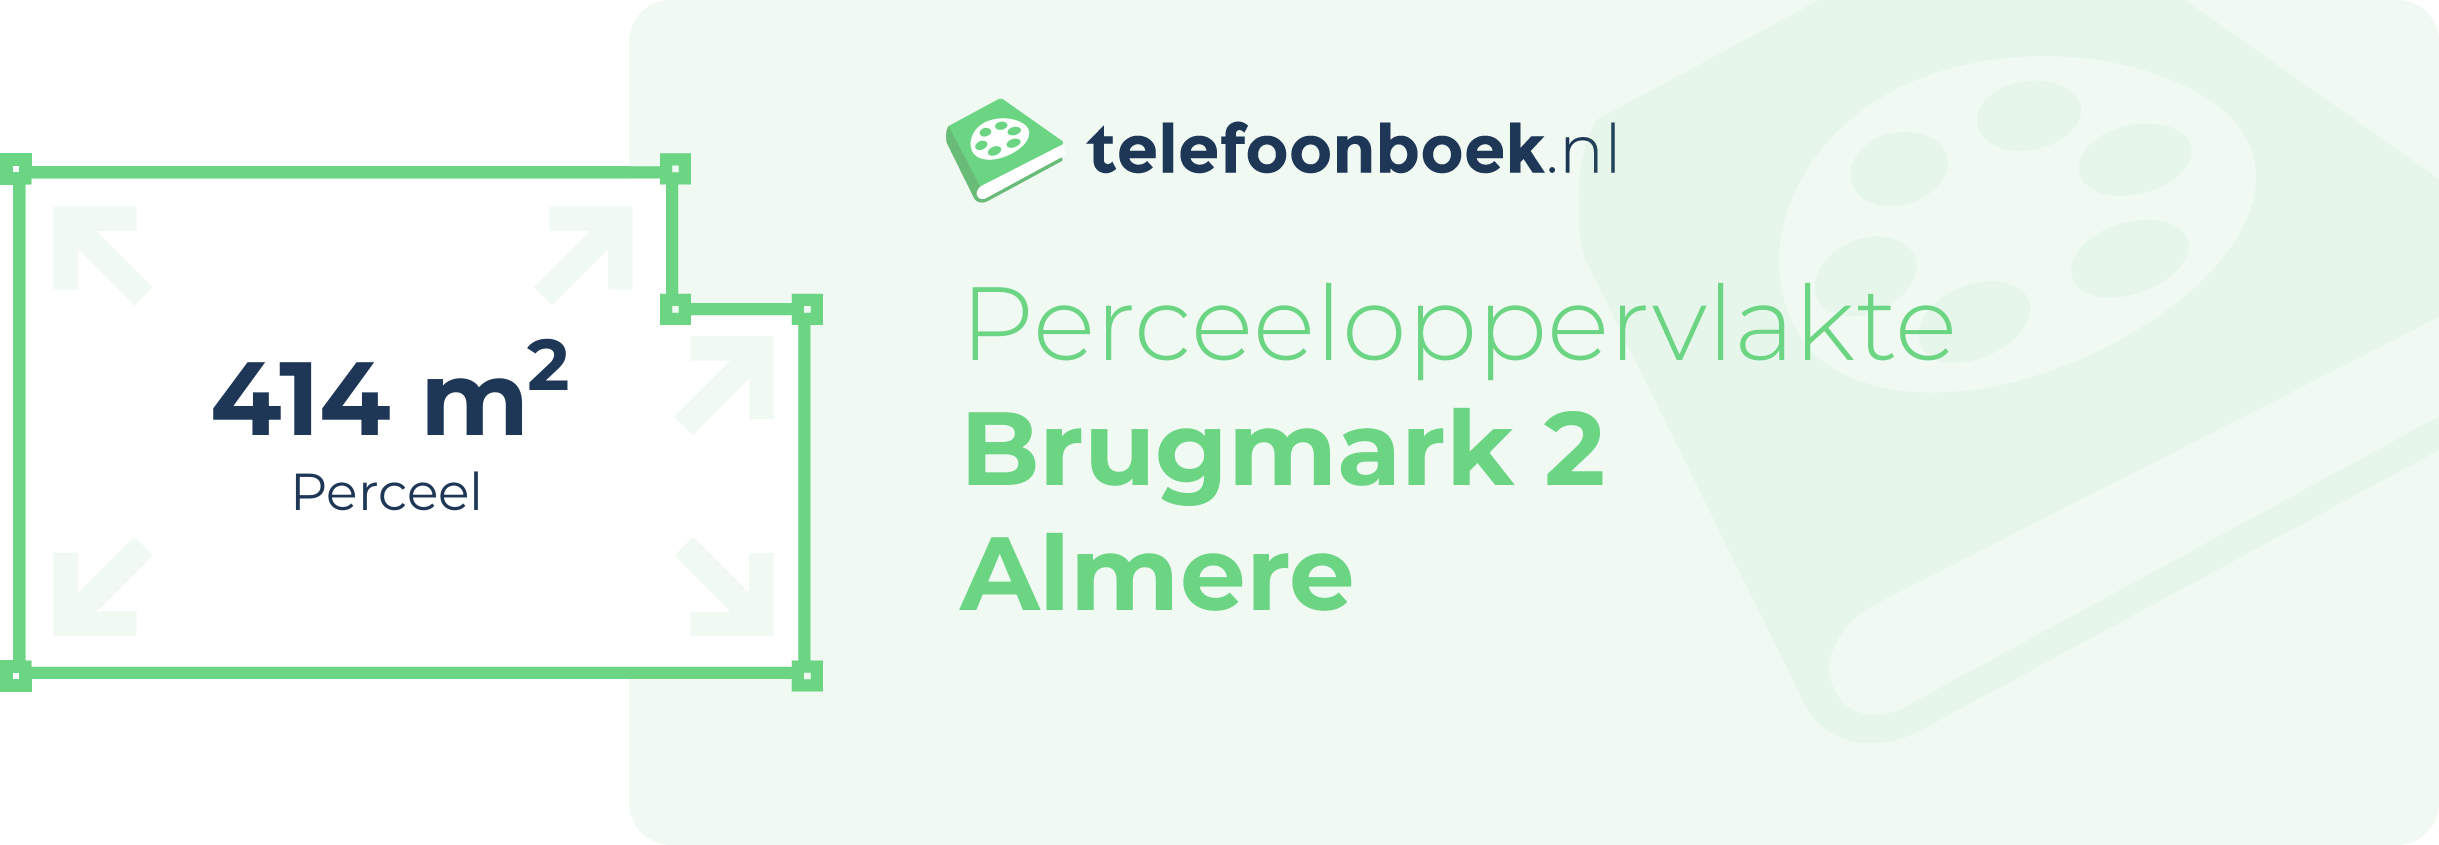 Perceeloppervlakte Brugmark 2 Almere